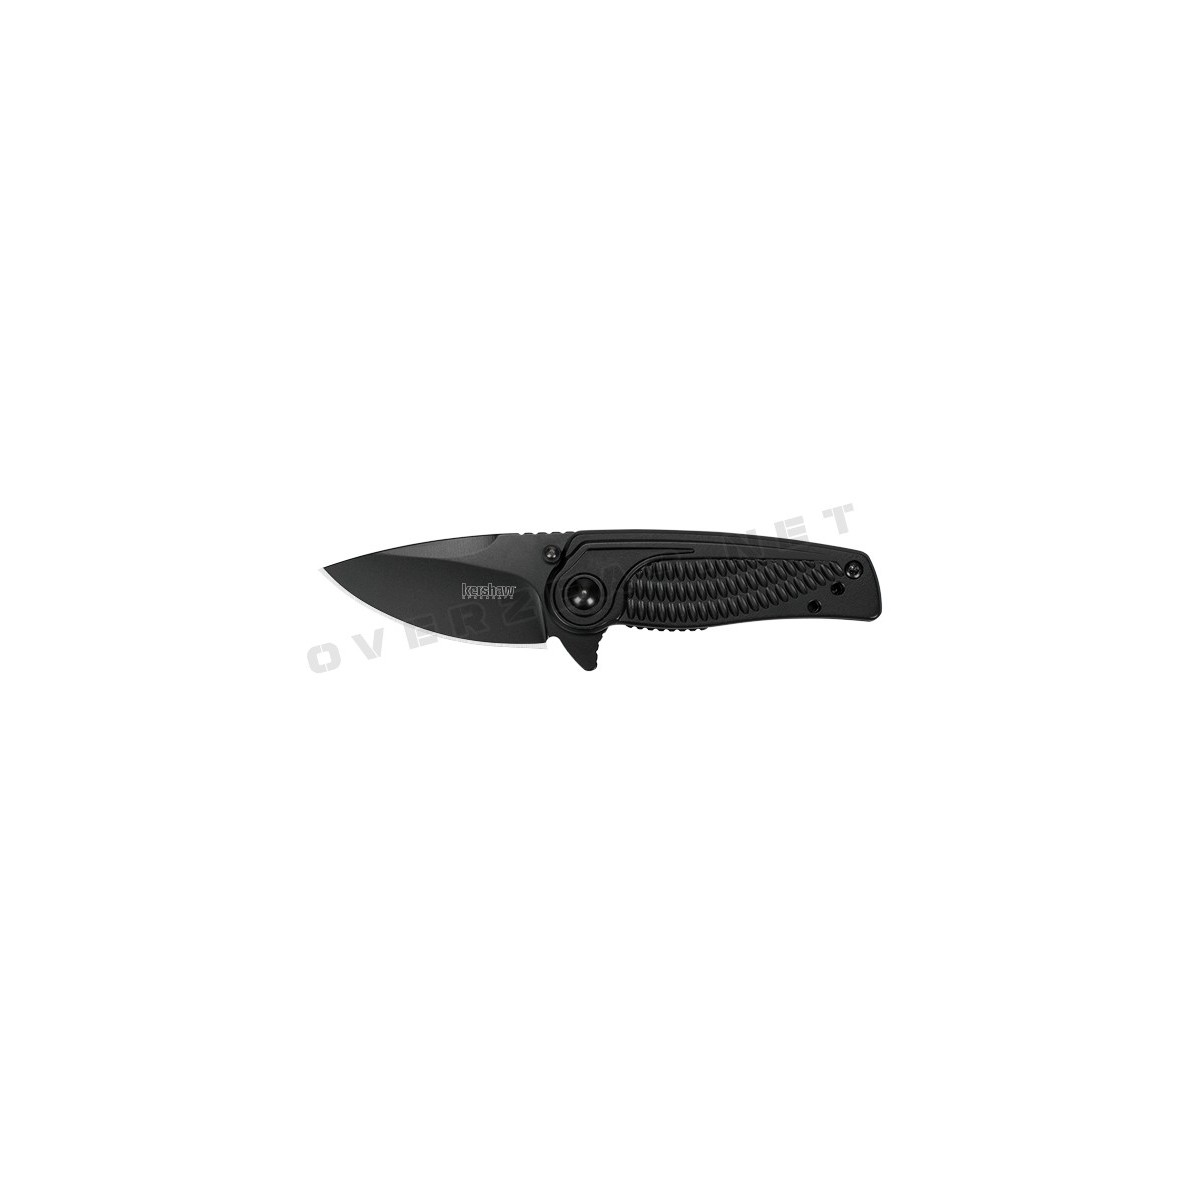 มีดพับ Kershaw Spoke Assisted Opening Flipper Knife (2" Black) 1313BLK